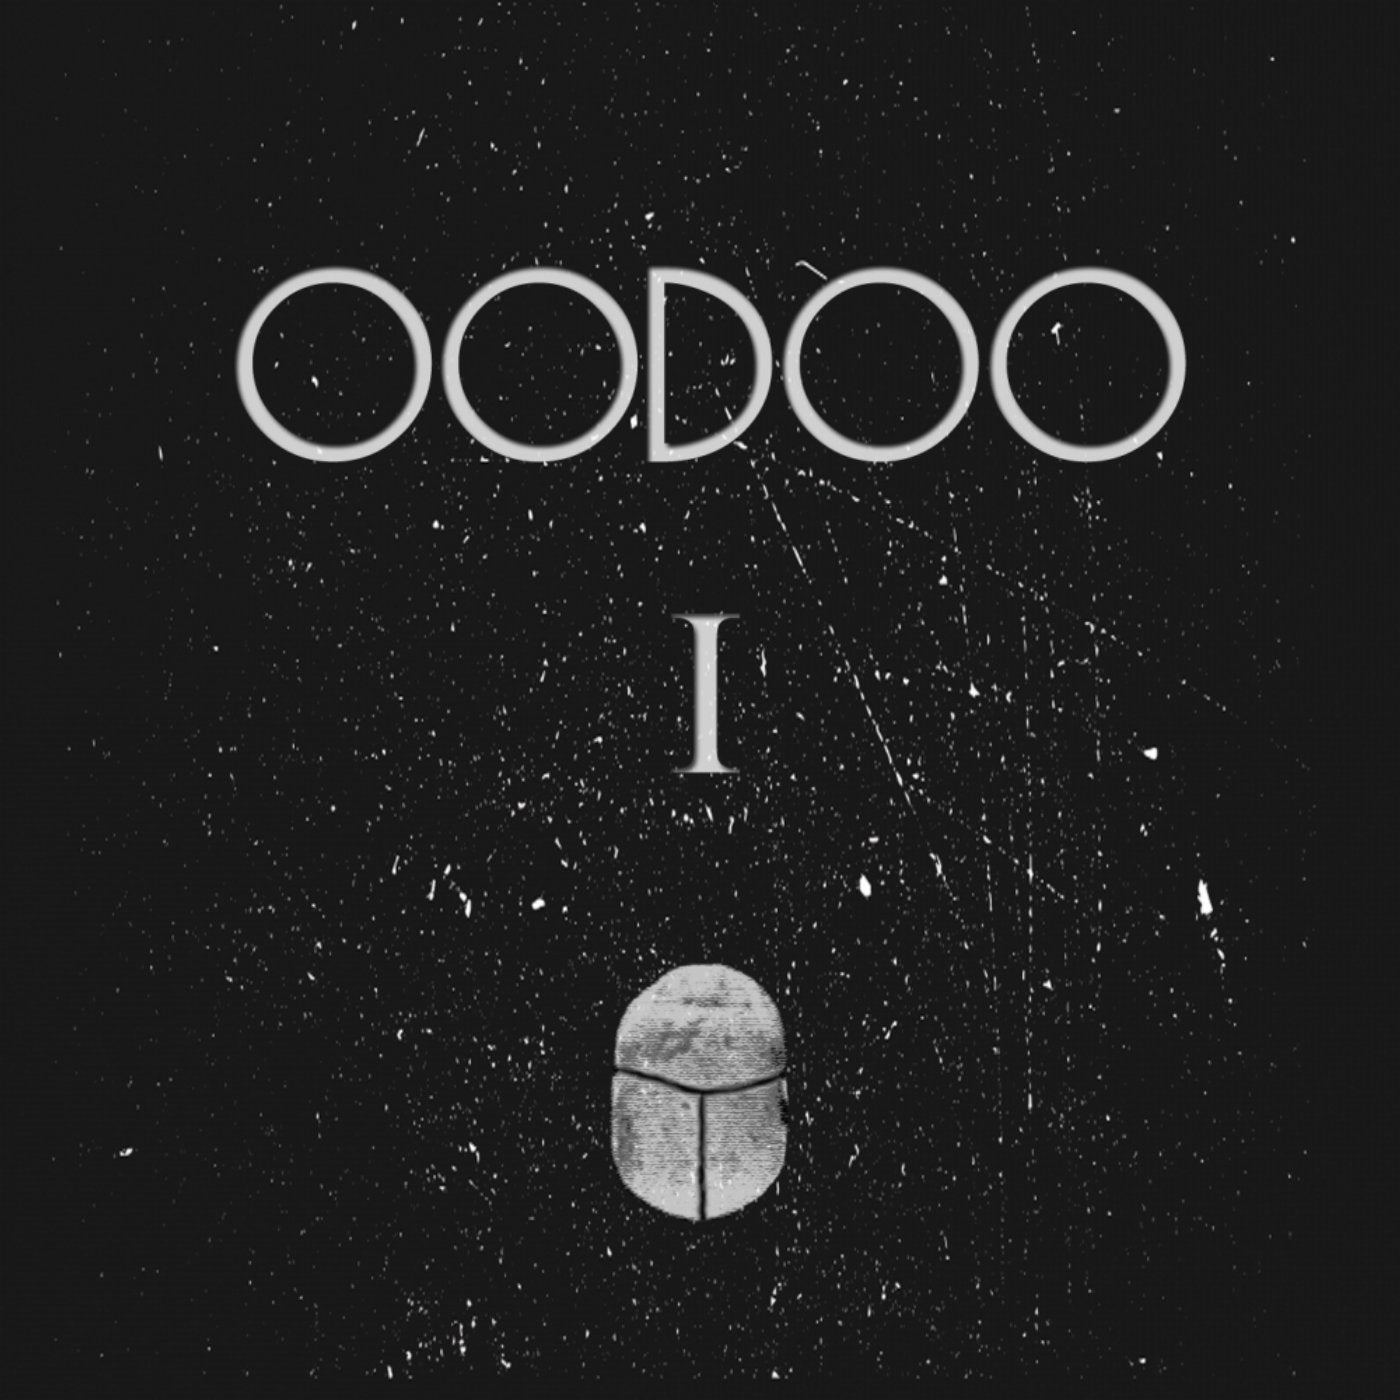 OODOO 01